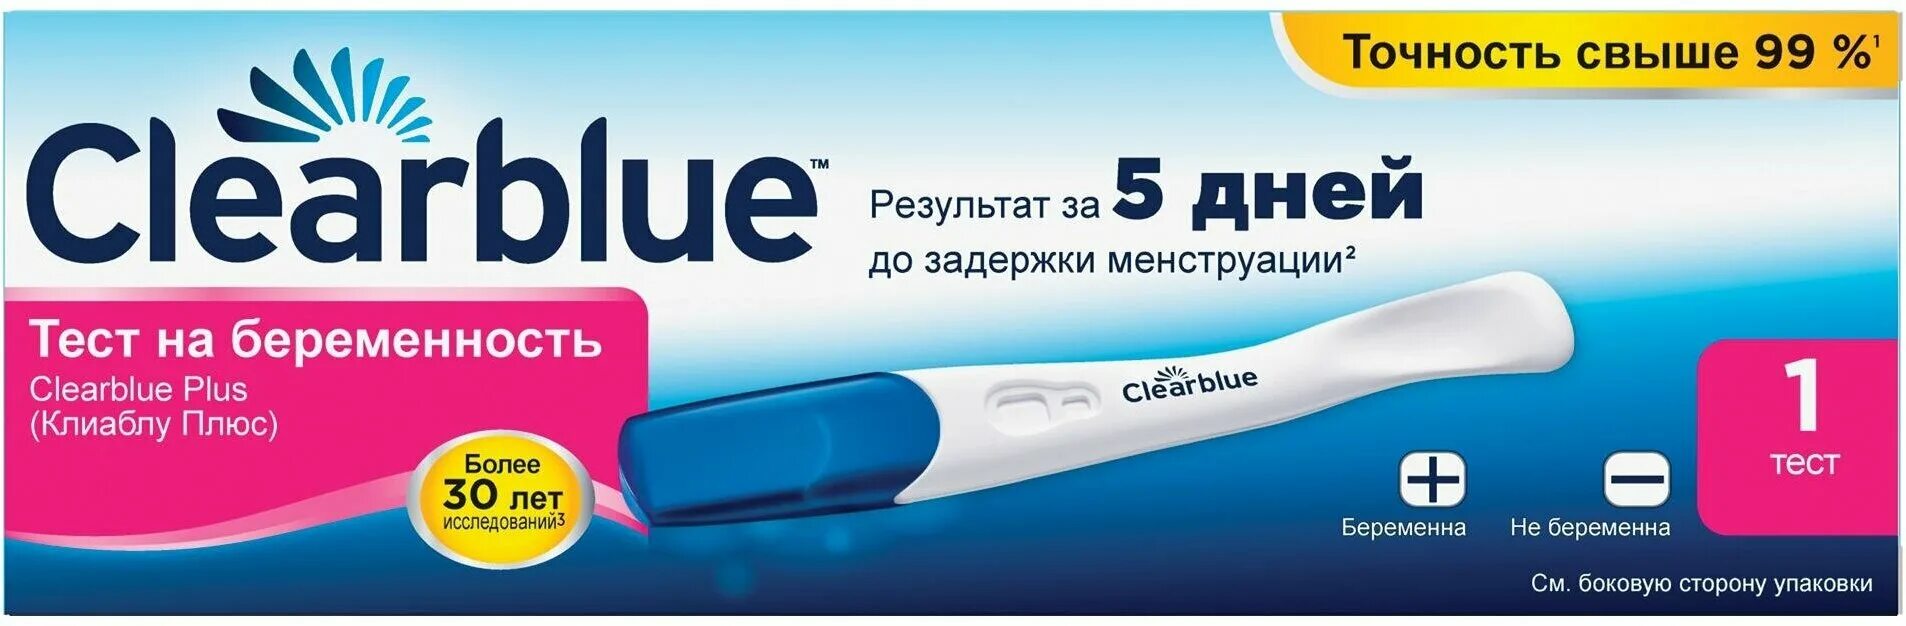 Тест clearblue до задержки. Тест на беременность Clearblue. Клиаблу тест на беременность. Тест Clearblue Plus на беременность. Результаты теста на беременность Clearblue.